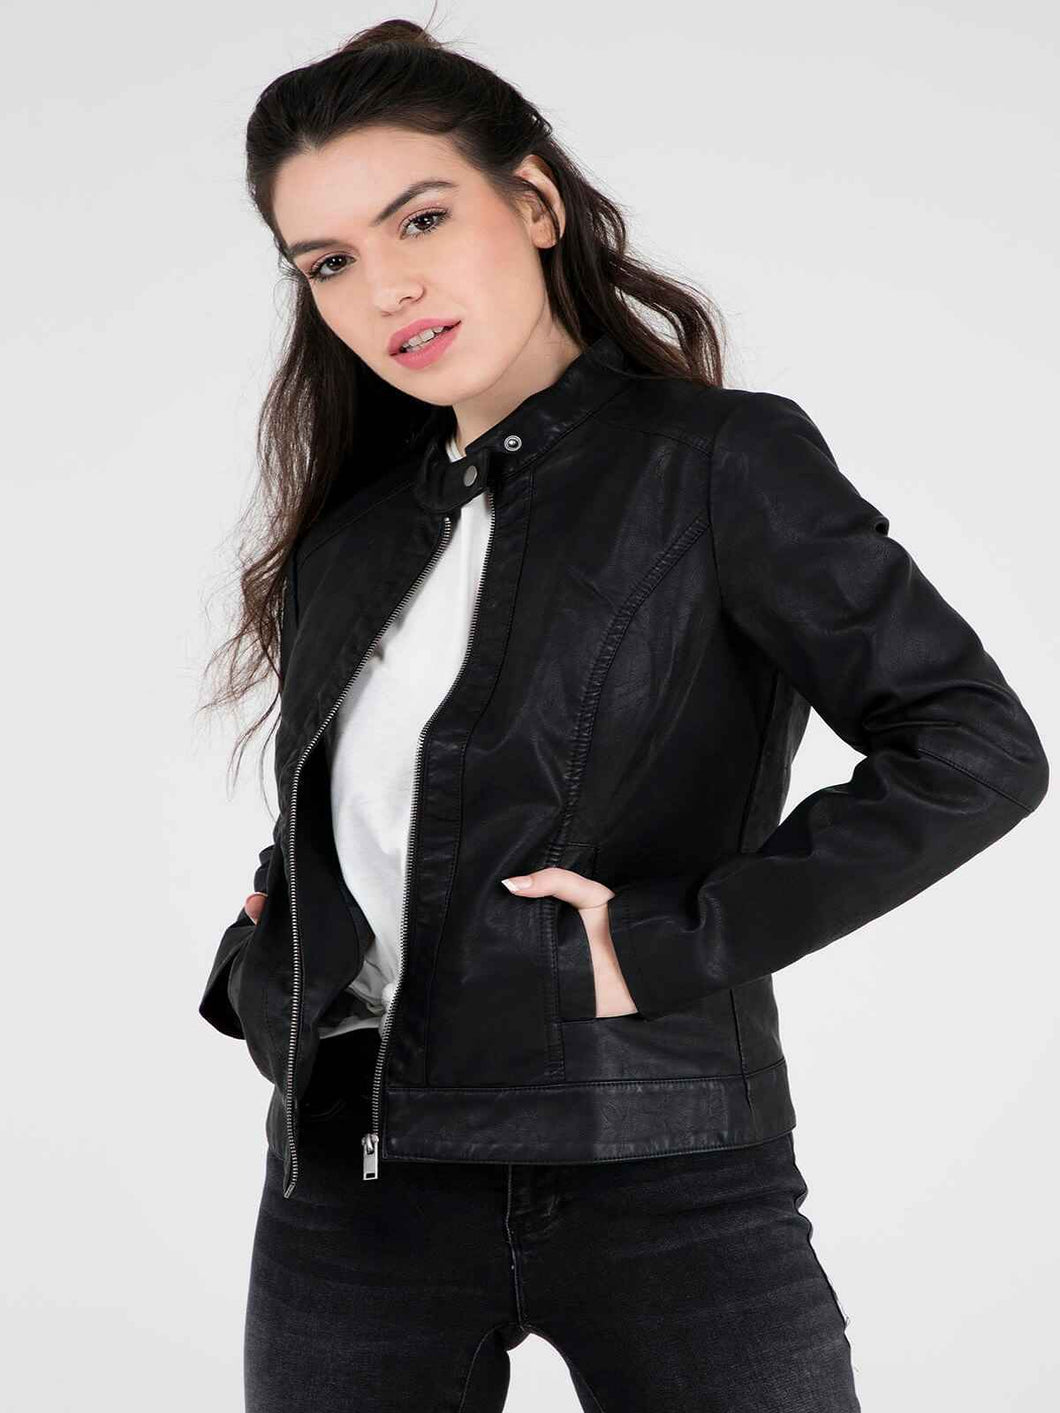 Womens Real Leather Elegant Leather Jacket – Boneshia.com